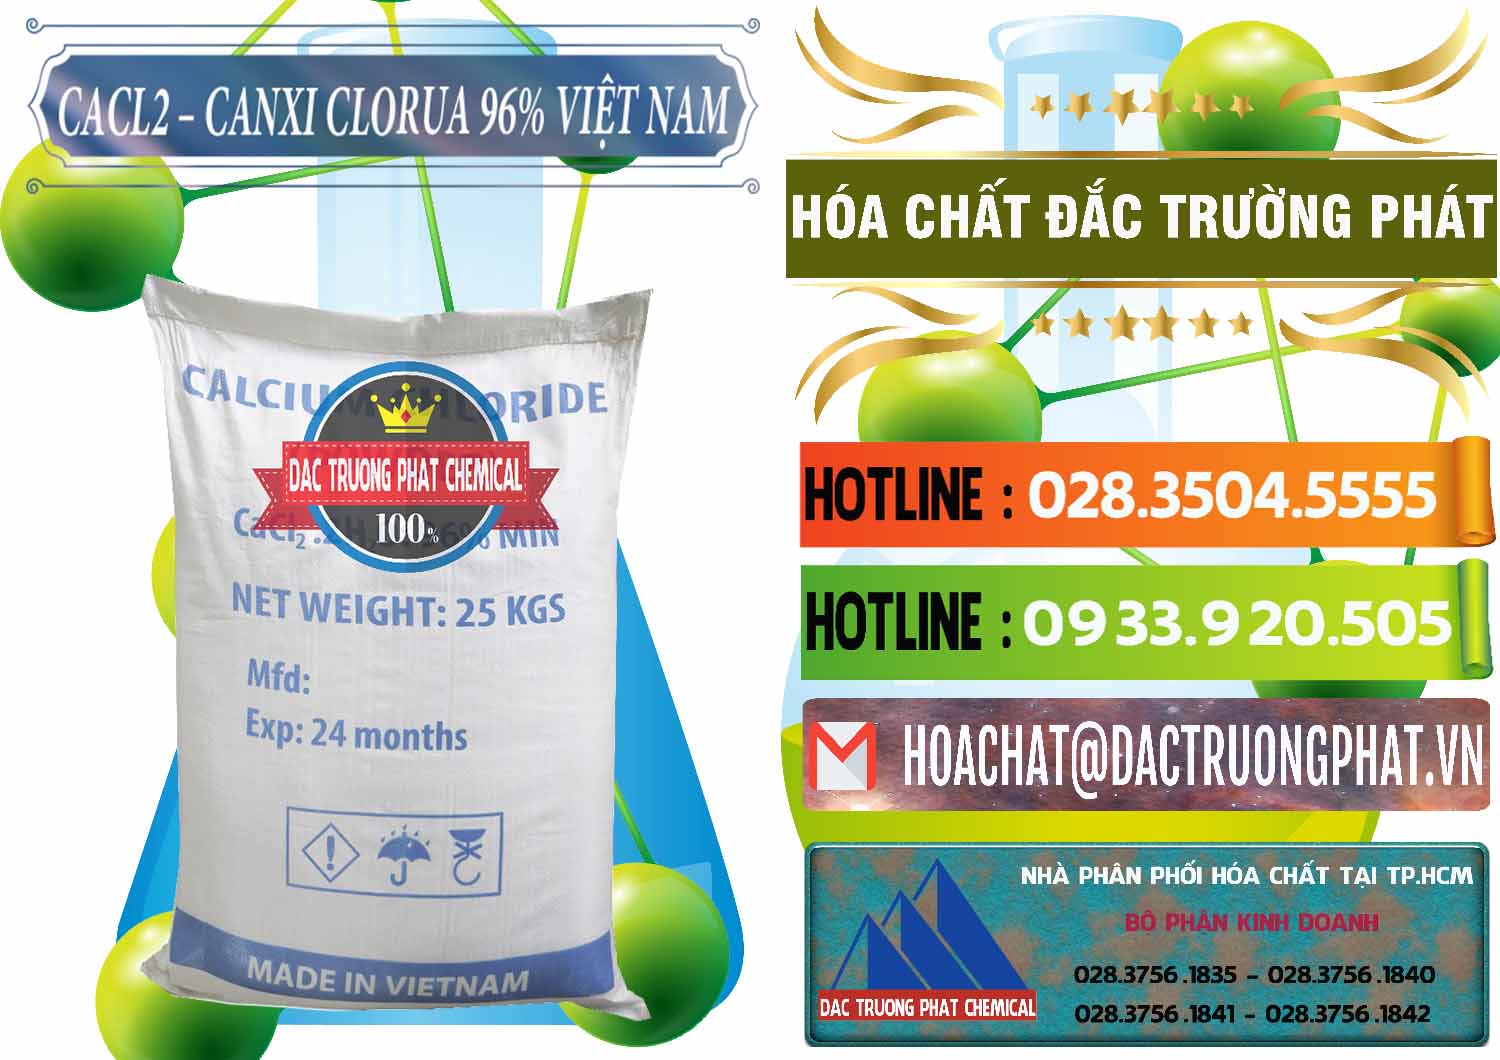 Nhà cung cấp và kinh doanh CaCl2 – Canxi Clorua 96% Việt Nam - 0236 - Công ty chuyên bán & cung cấp hóa chất tại TP.HCM - cungcaphoachat.com.vn